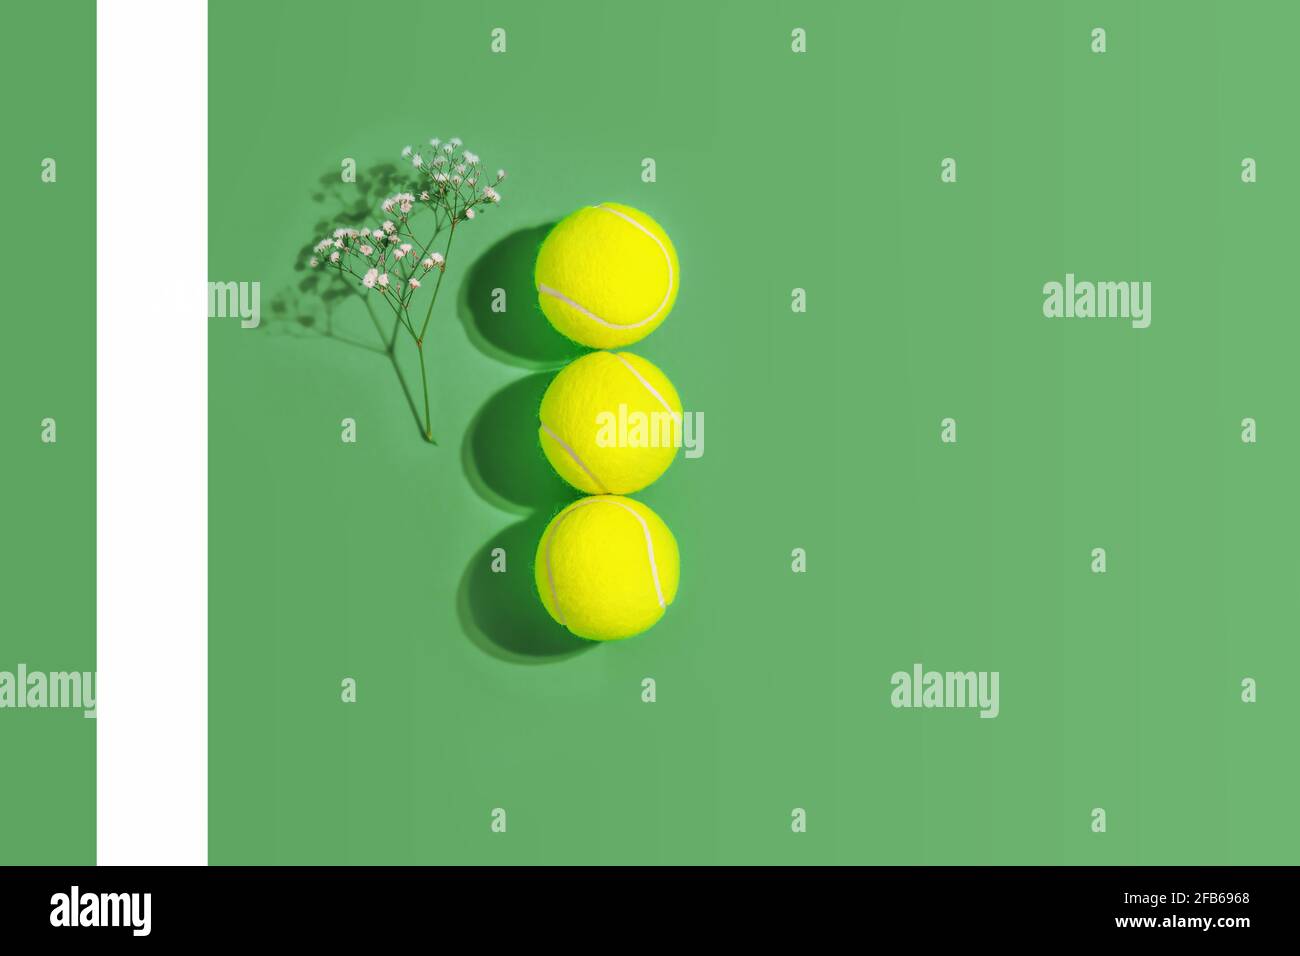 Tennis. Composition sportive de printemps avec trois balles de tennis jaunes et des fleurs sur fond vert d'un court de tennis dur avec espace de copie Banque D'Images